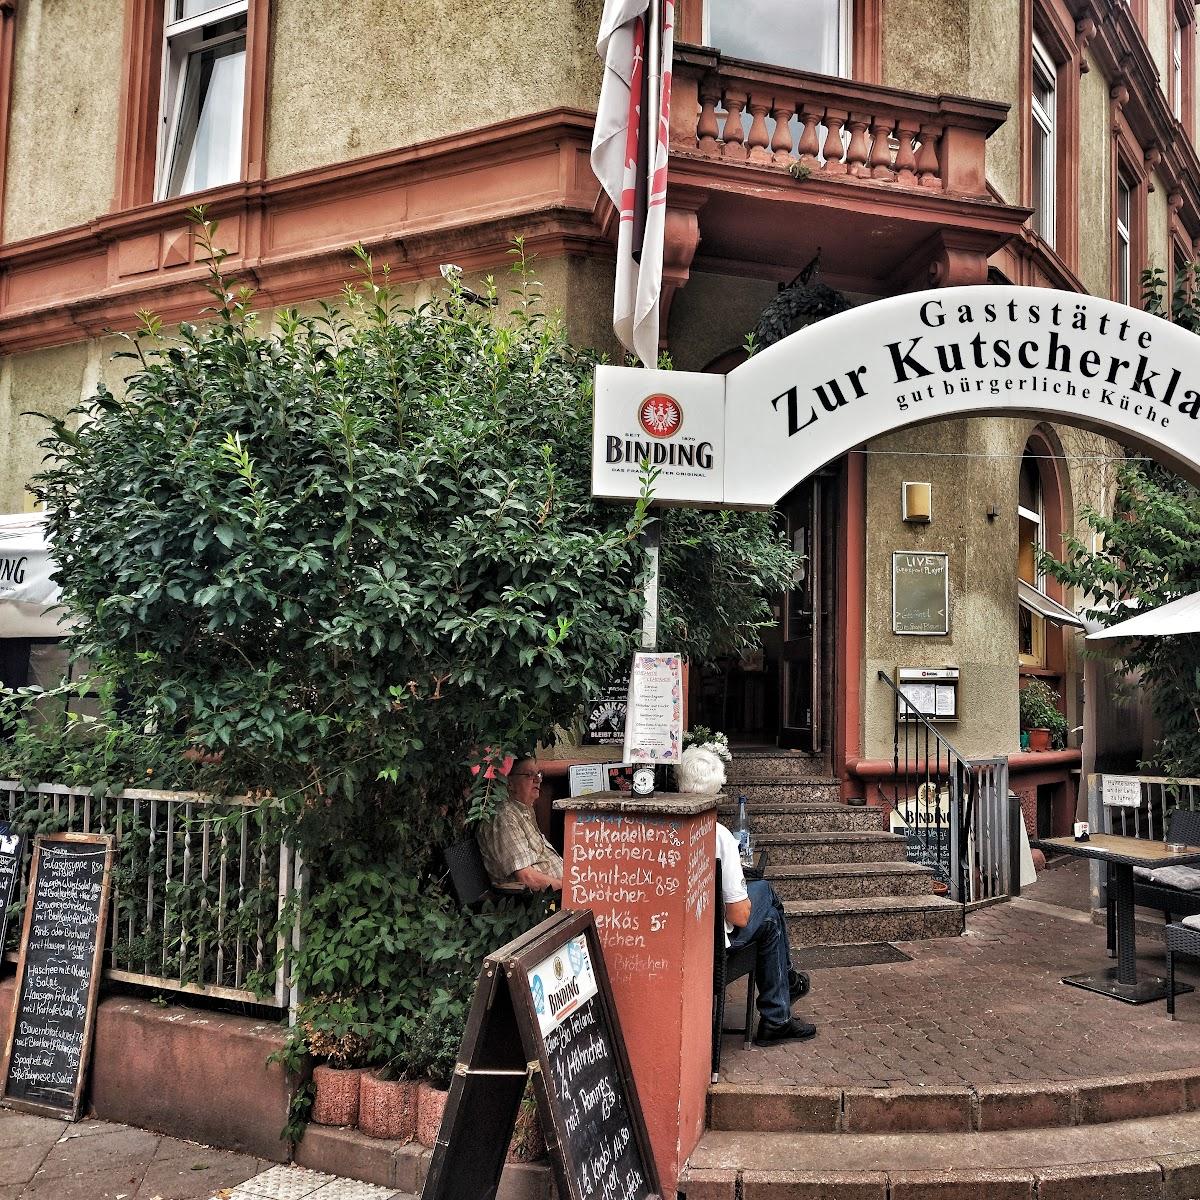 Restaurant "Zur Kutscherklause" in Frankfurt am Main